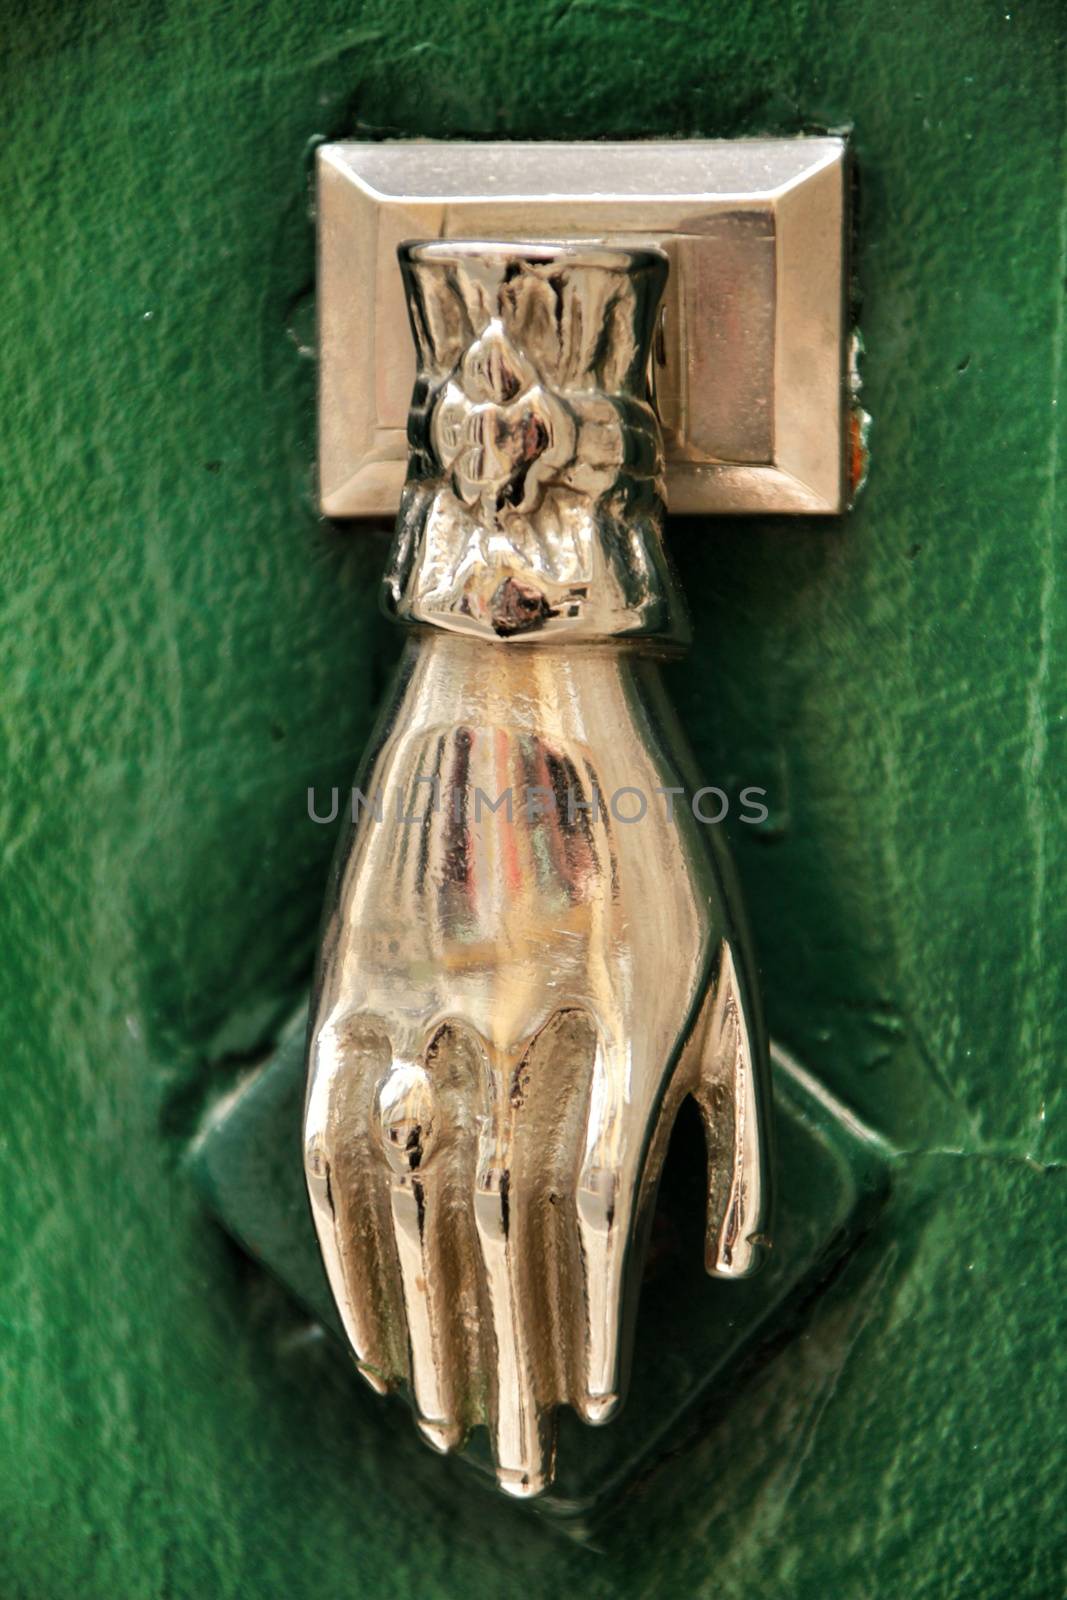 Door knocker with hand shape on green wooden door